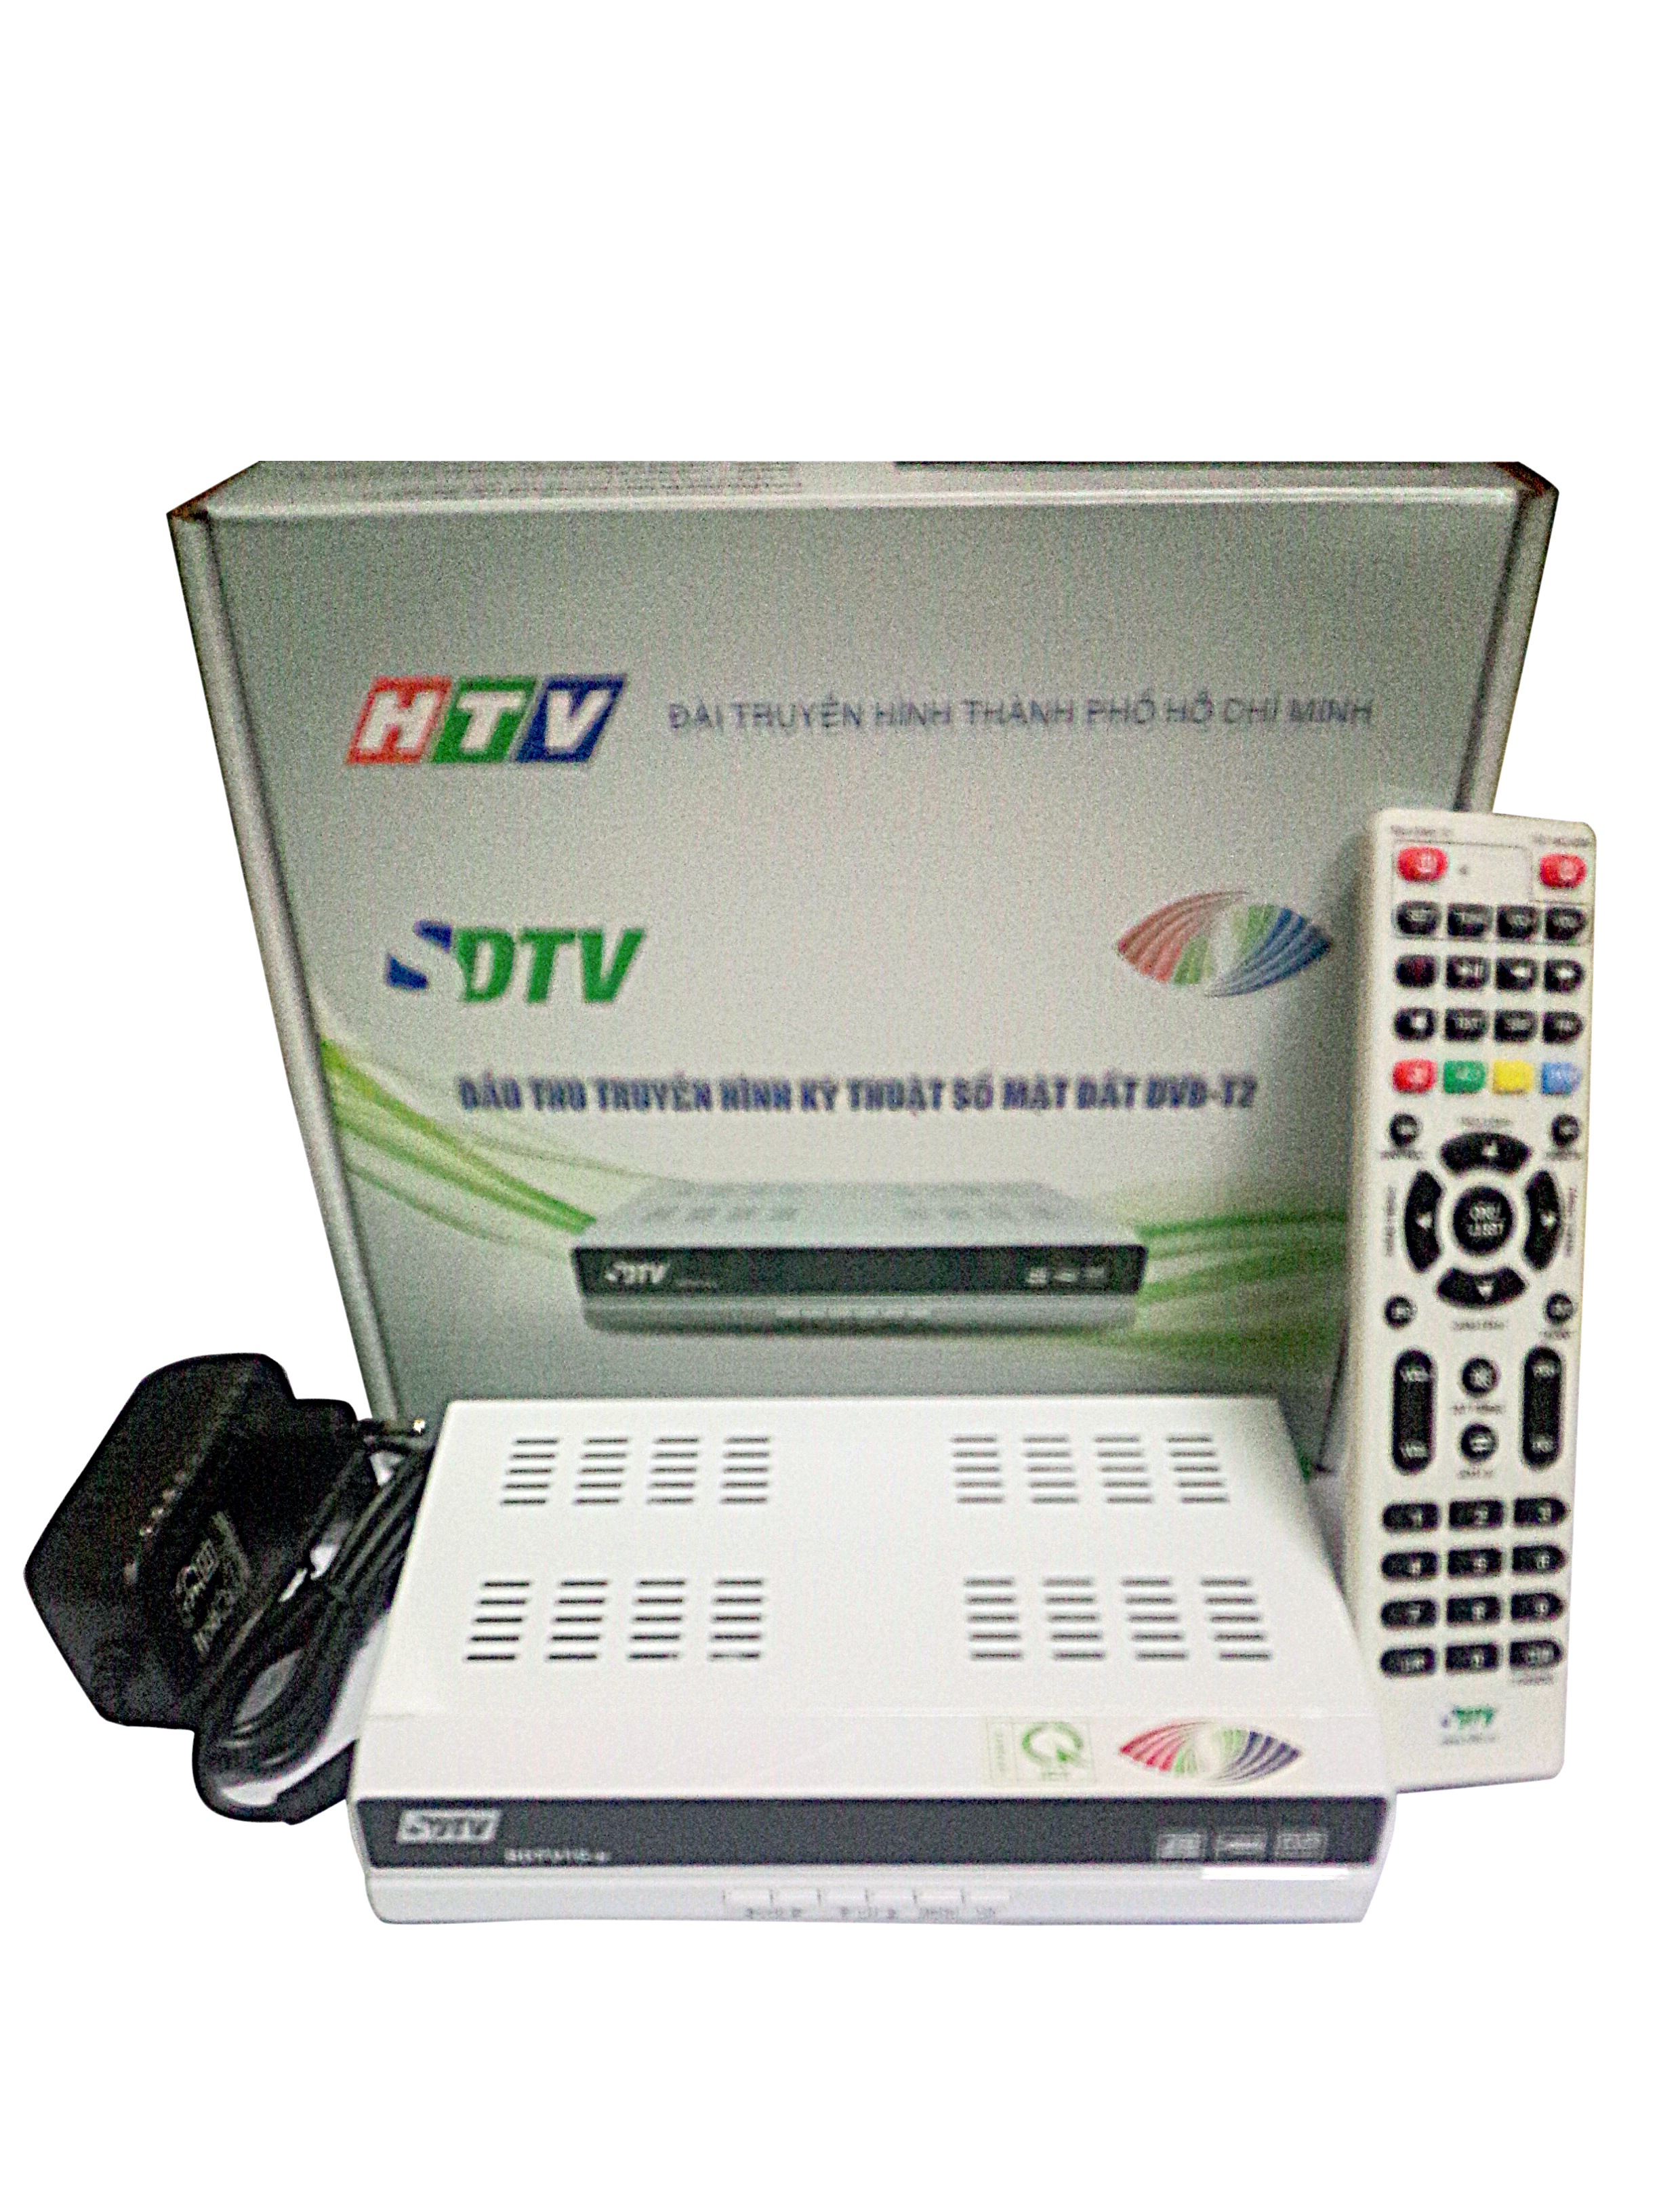 ĐẦU THU DVB-T2 HTV -SDTV